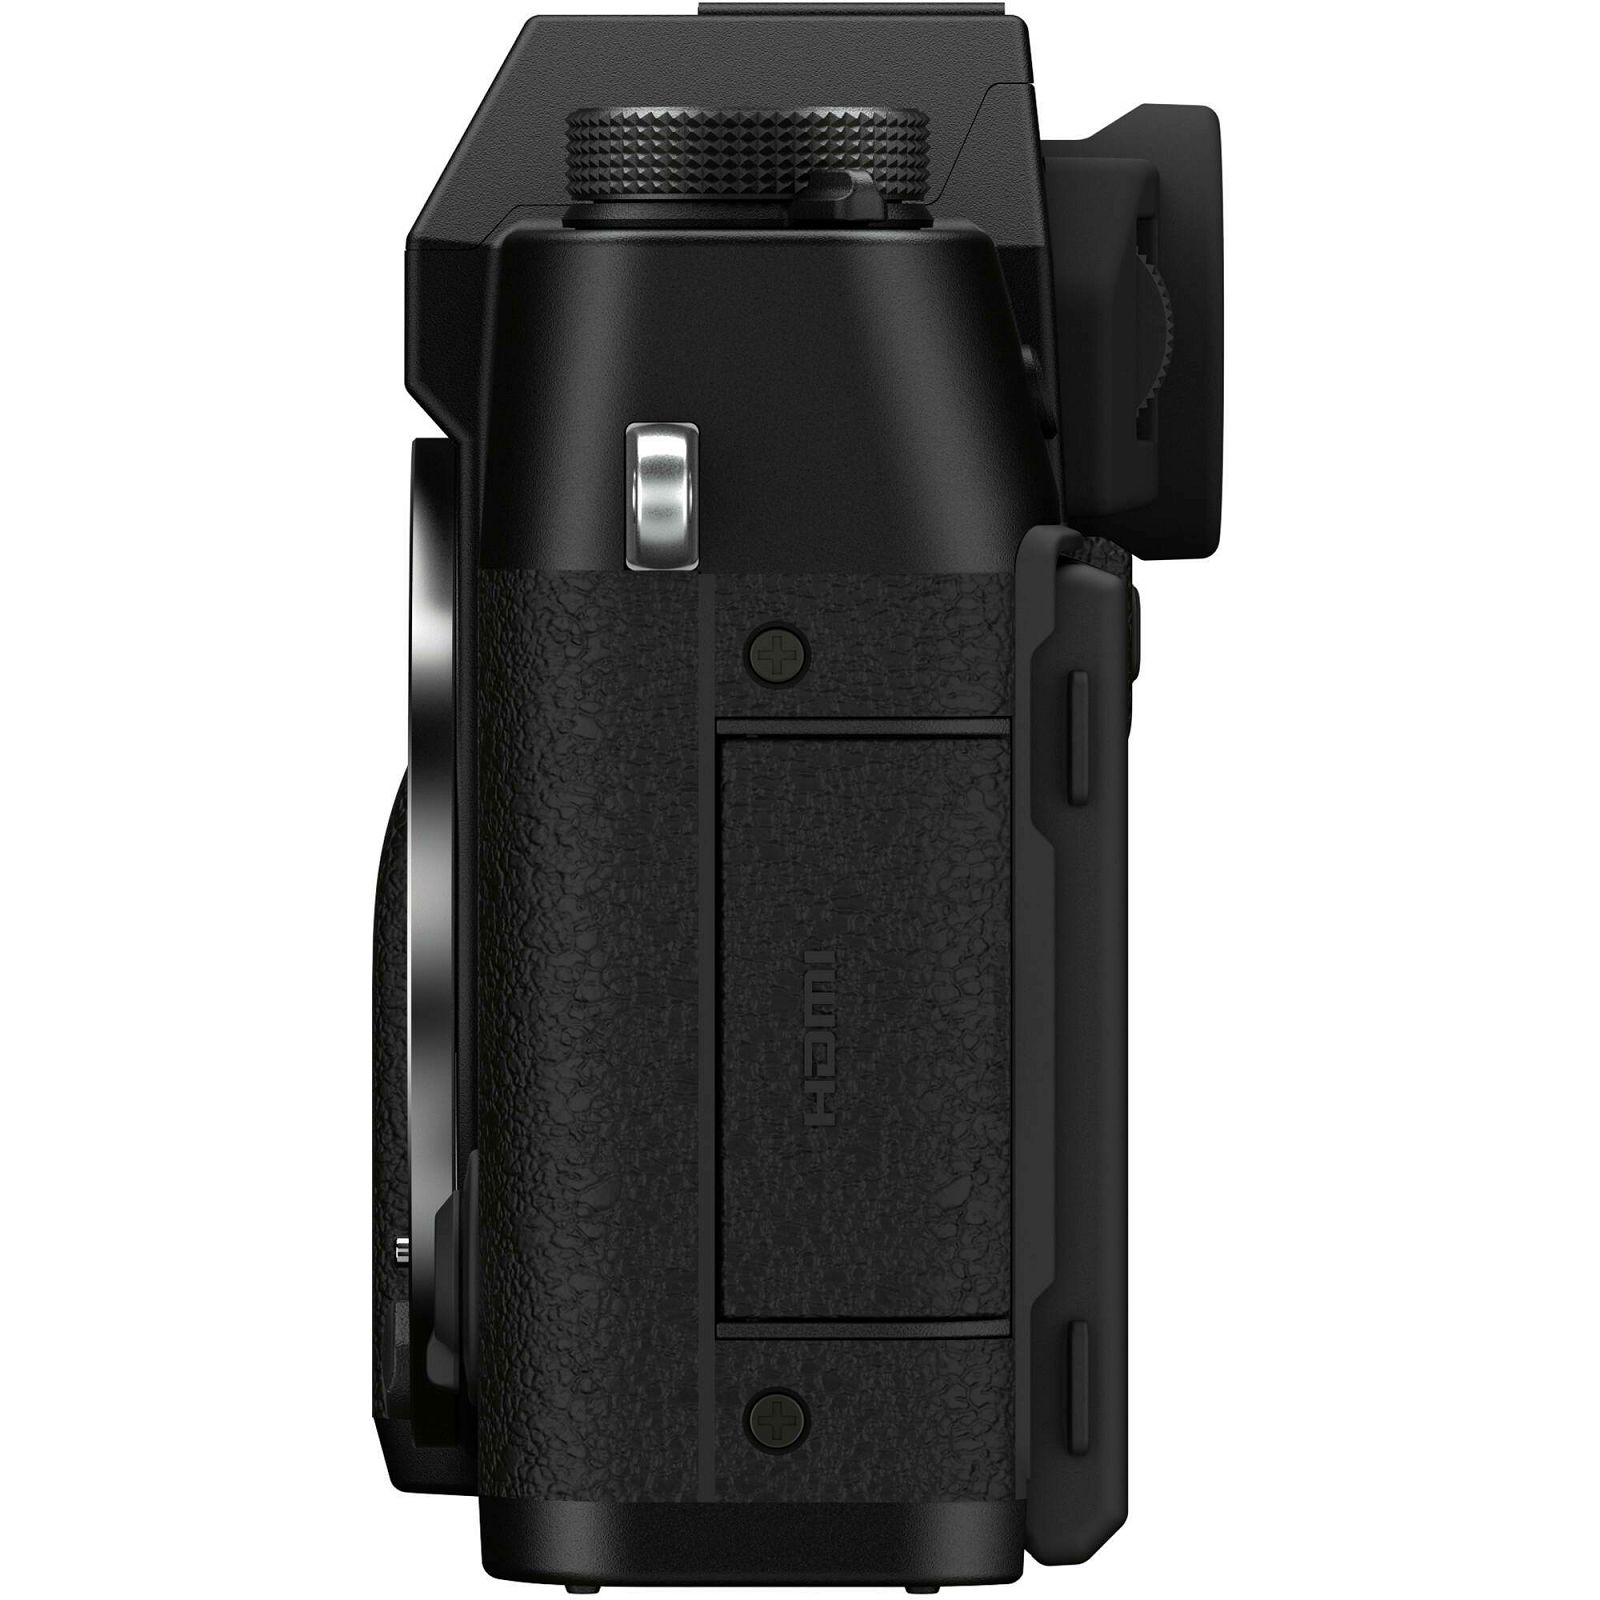 Fujifilm X-T30 II Body Black crni Digitalni fotoaparat Mirrorless camera Fuji Finepix (16759615)